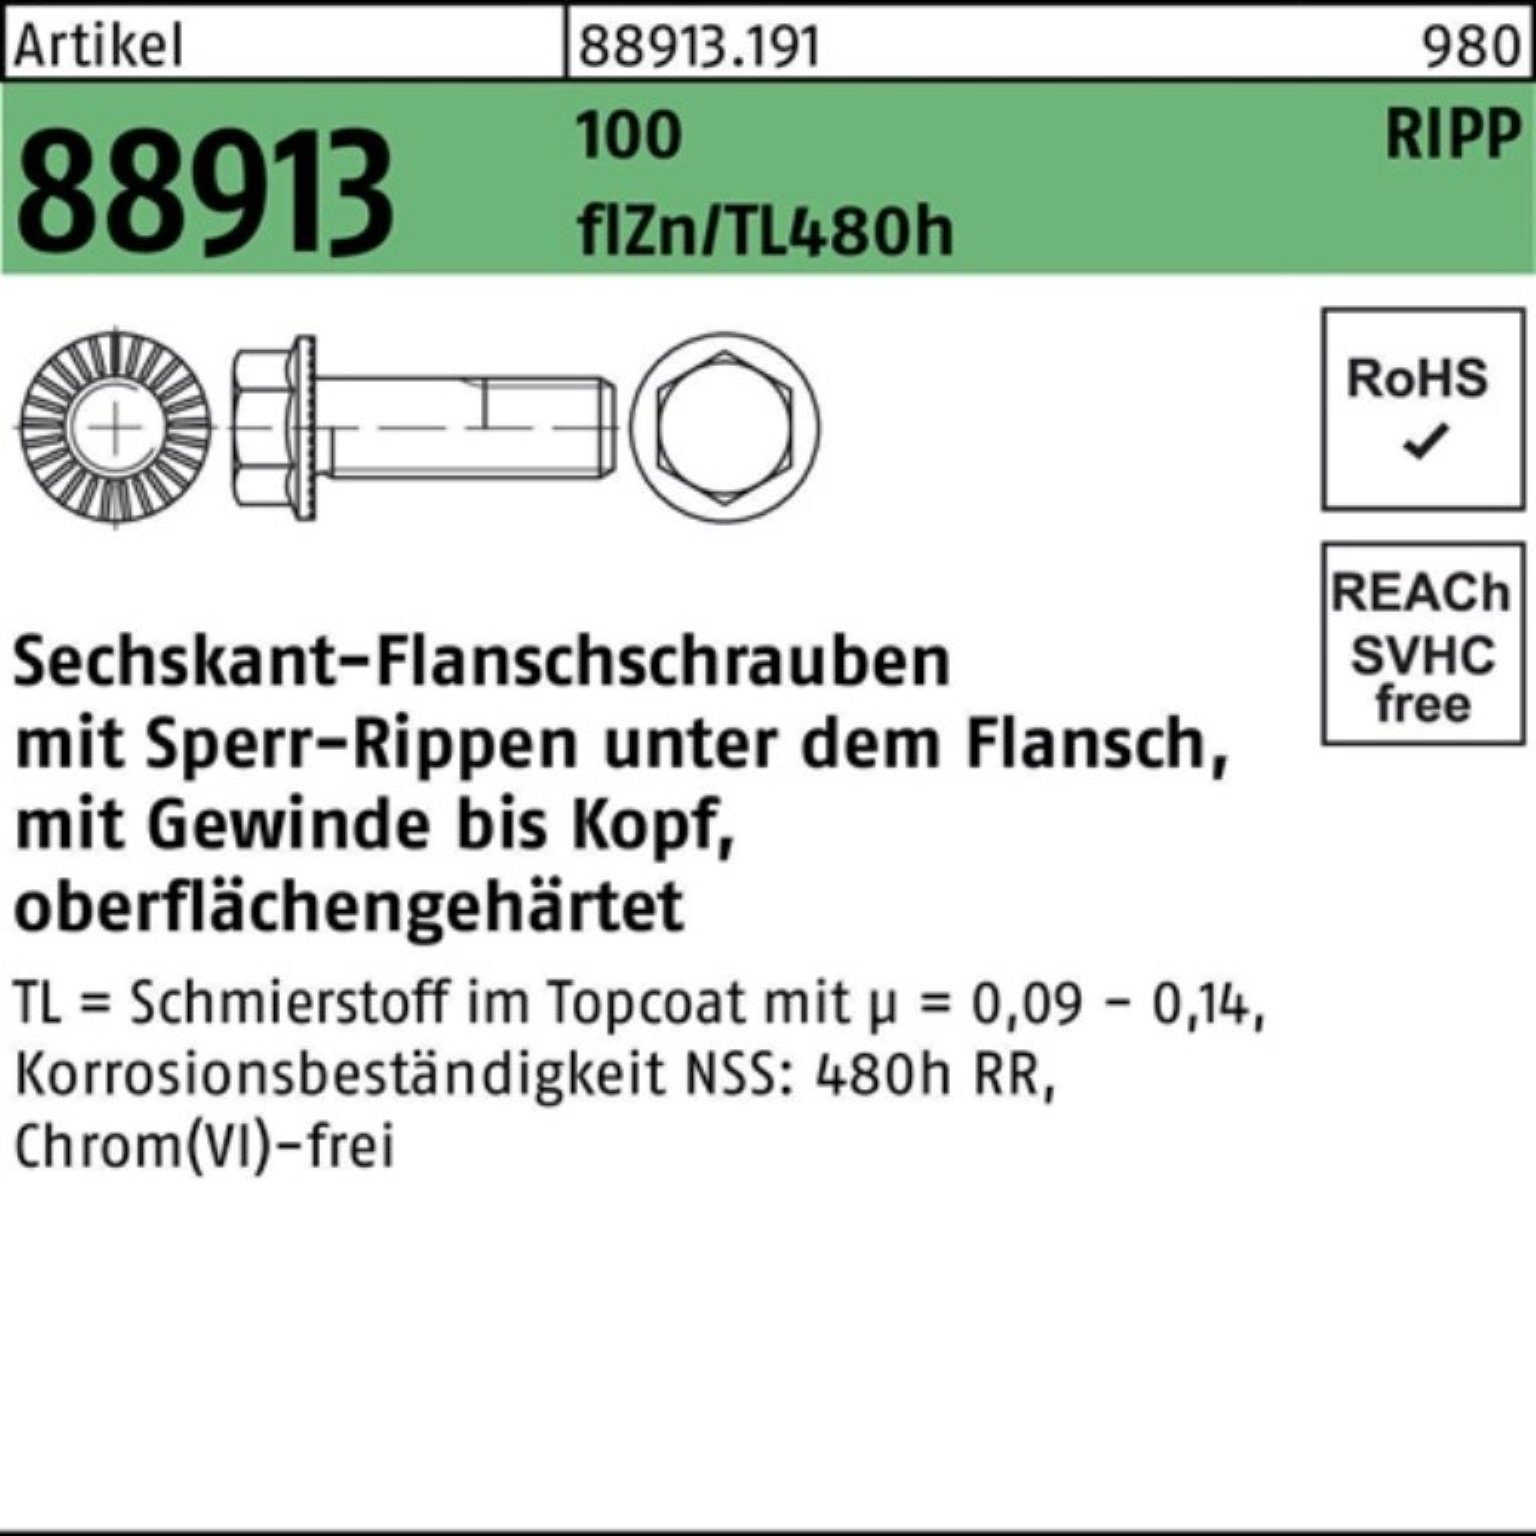 Reyher Schraube 100er R Sechskantflanschschraube Pack Sperr-Ripp VG M12x45 f 88913 100